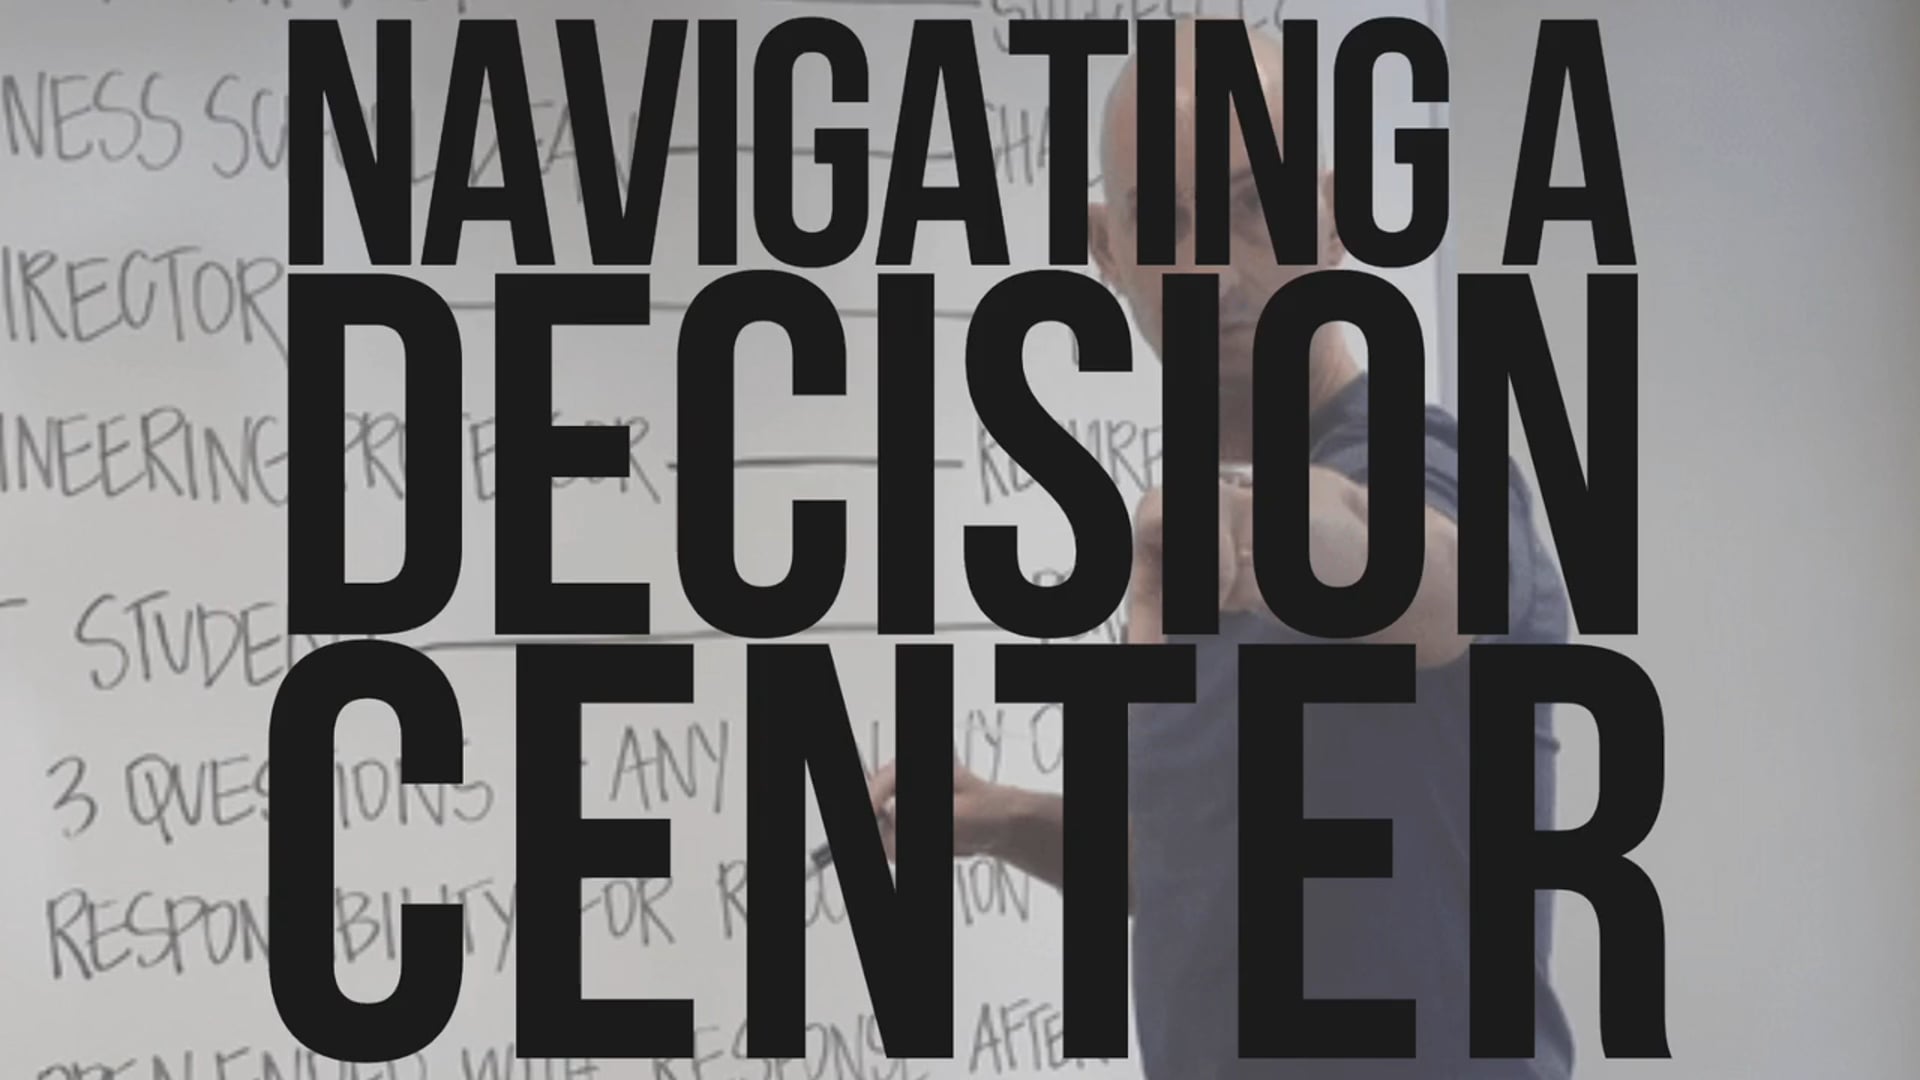 Navigating A Decision Center